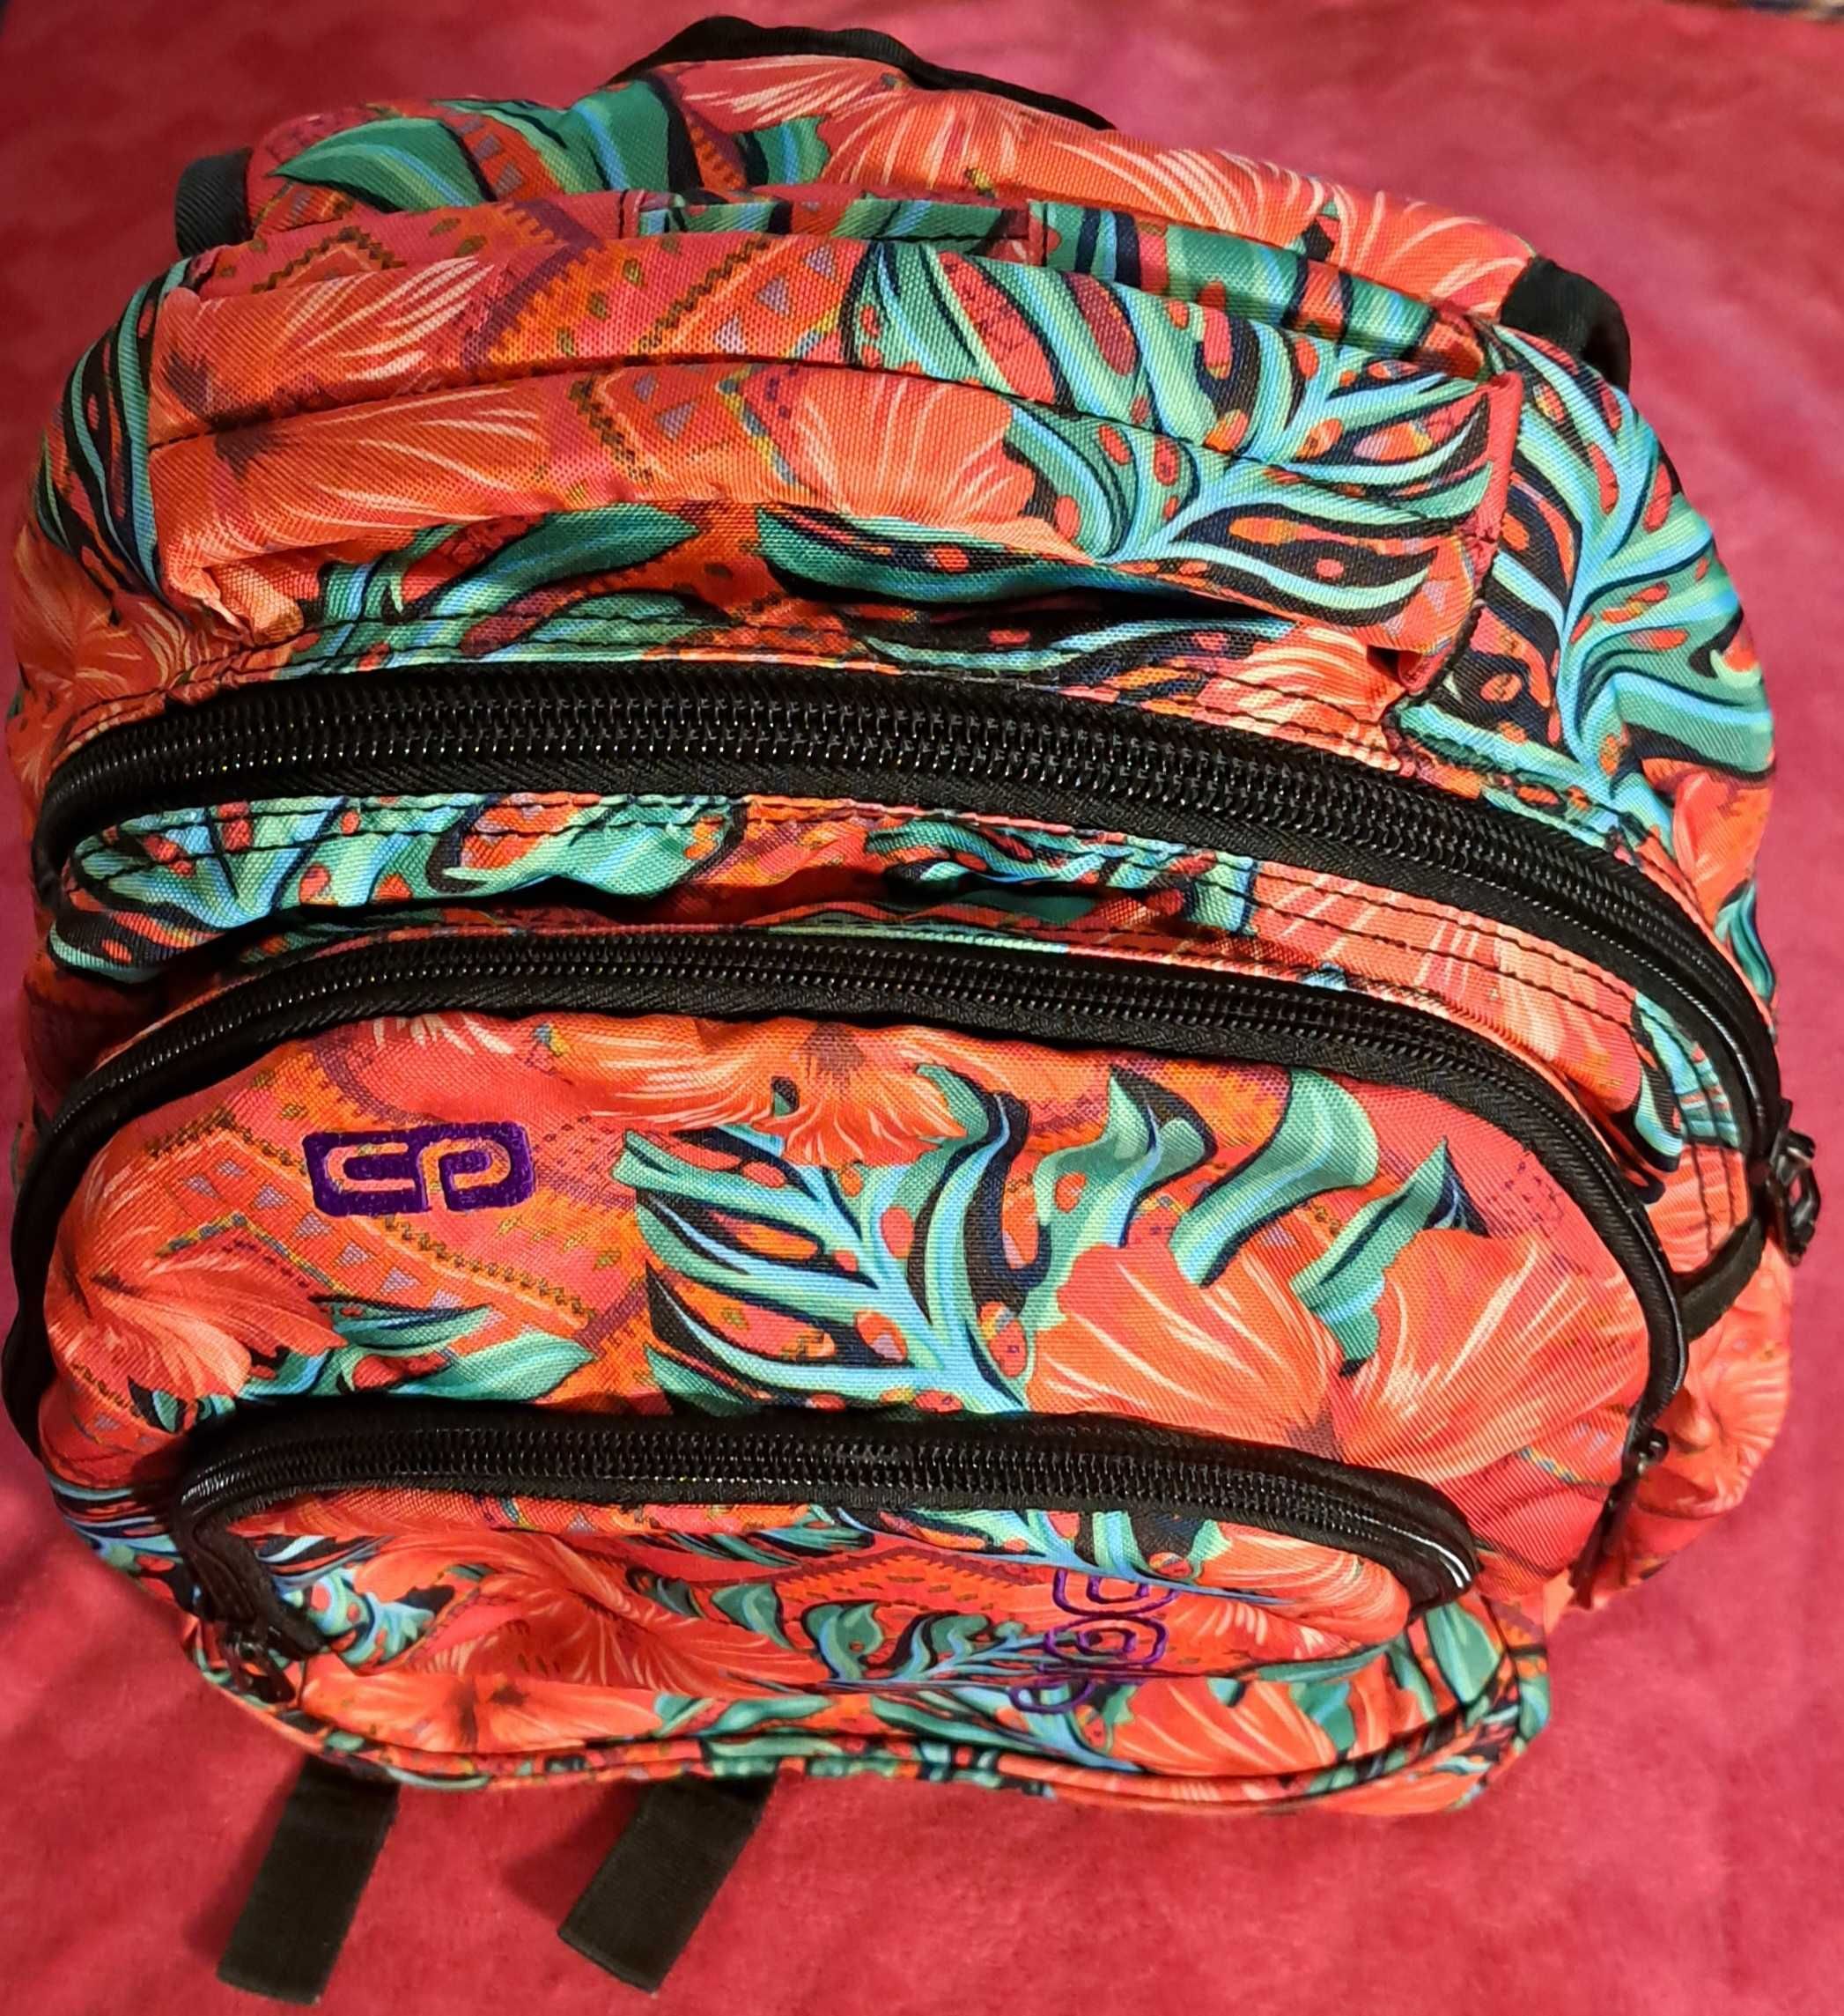 Plecak Cool Pack do szkoły dla dziewczynki kl. 3-8